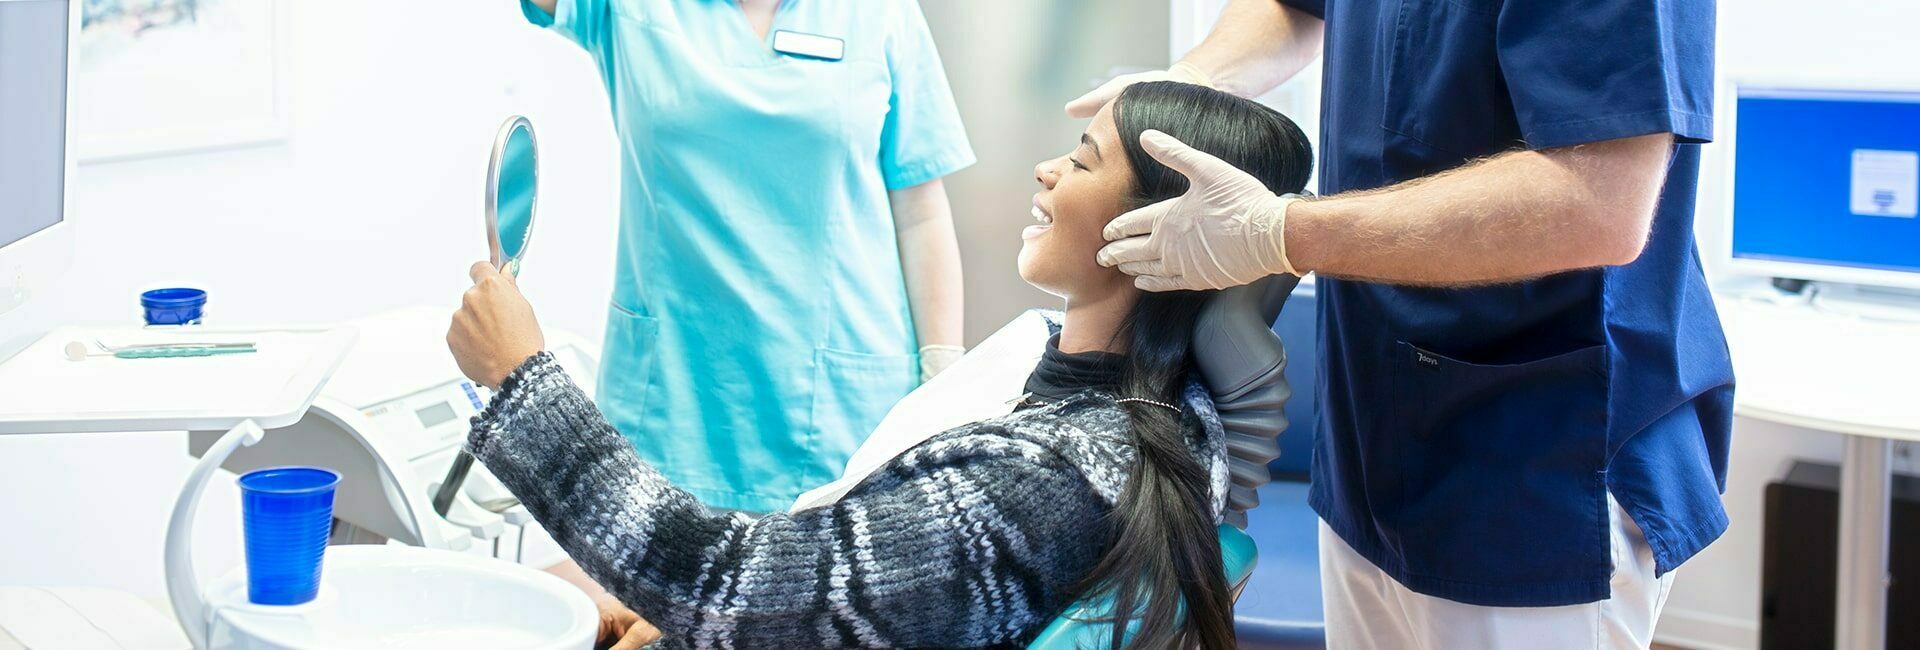 Zahnarzt untersucht Kiefergelenk der Patientin